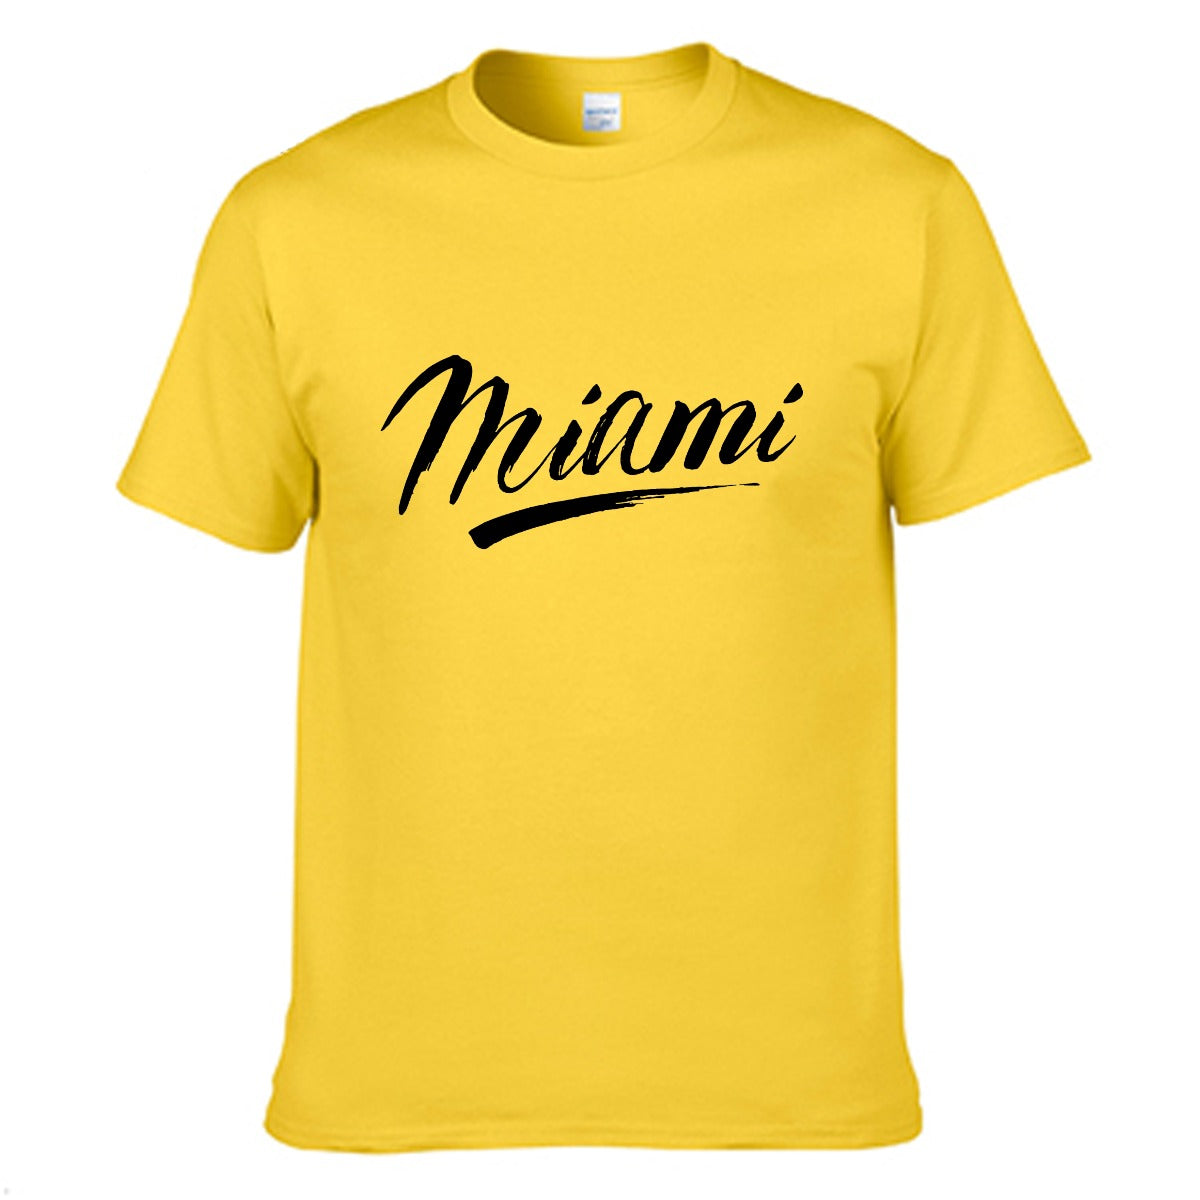 Miami Men's T-shirt (100% Cotton) - T0359